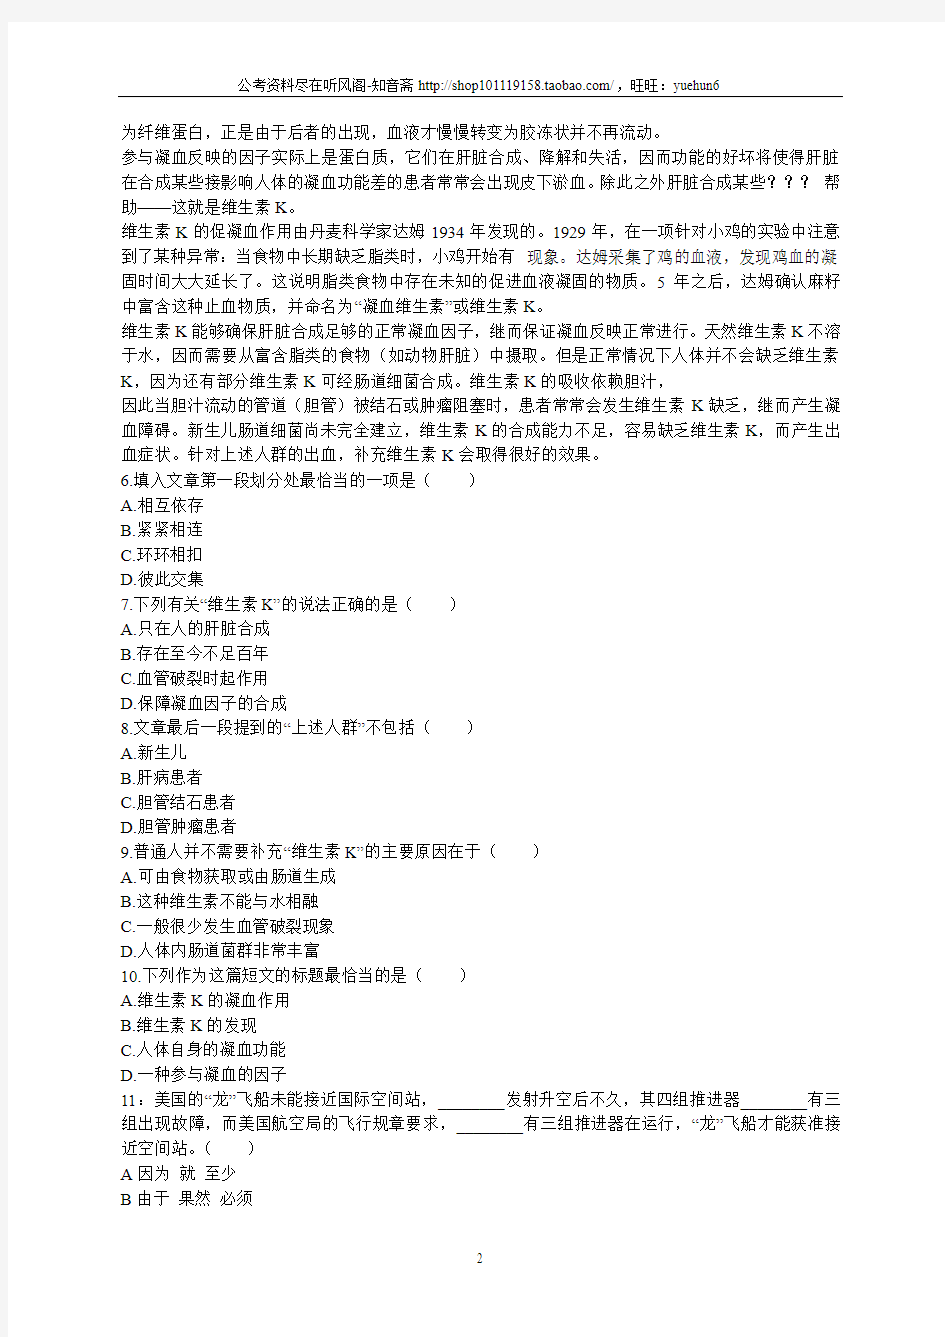 2013年江苏公务员考试《行测》C类真题与答案解析(部分)